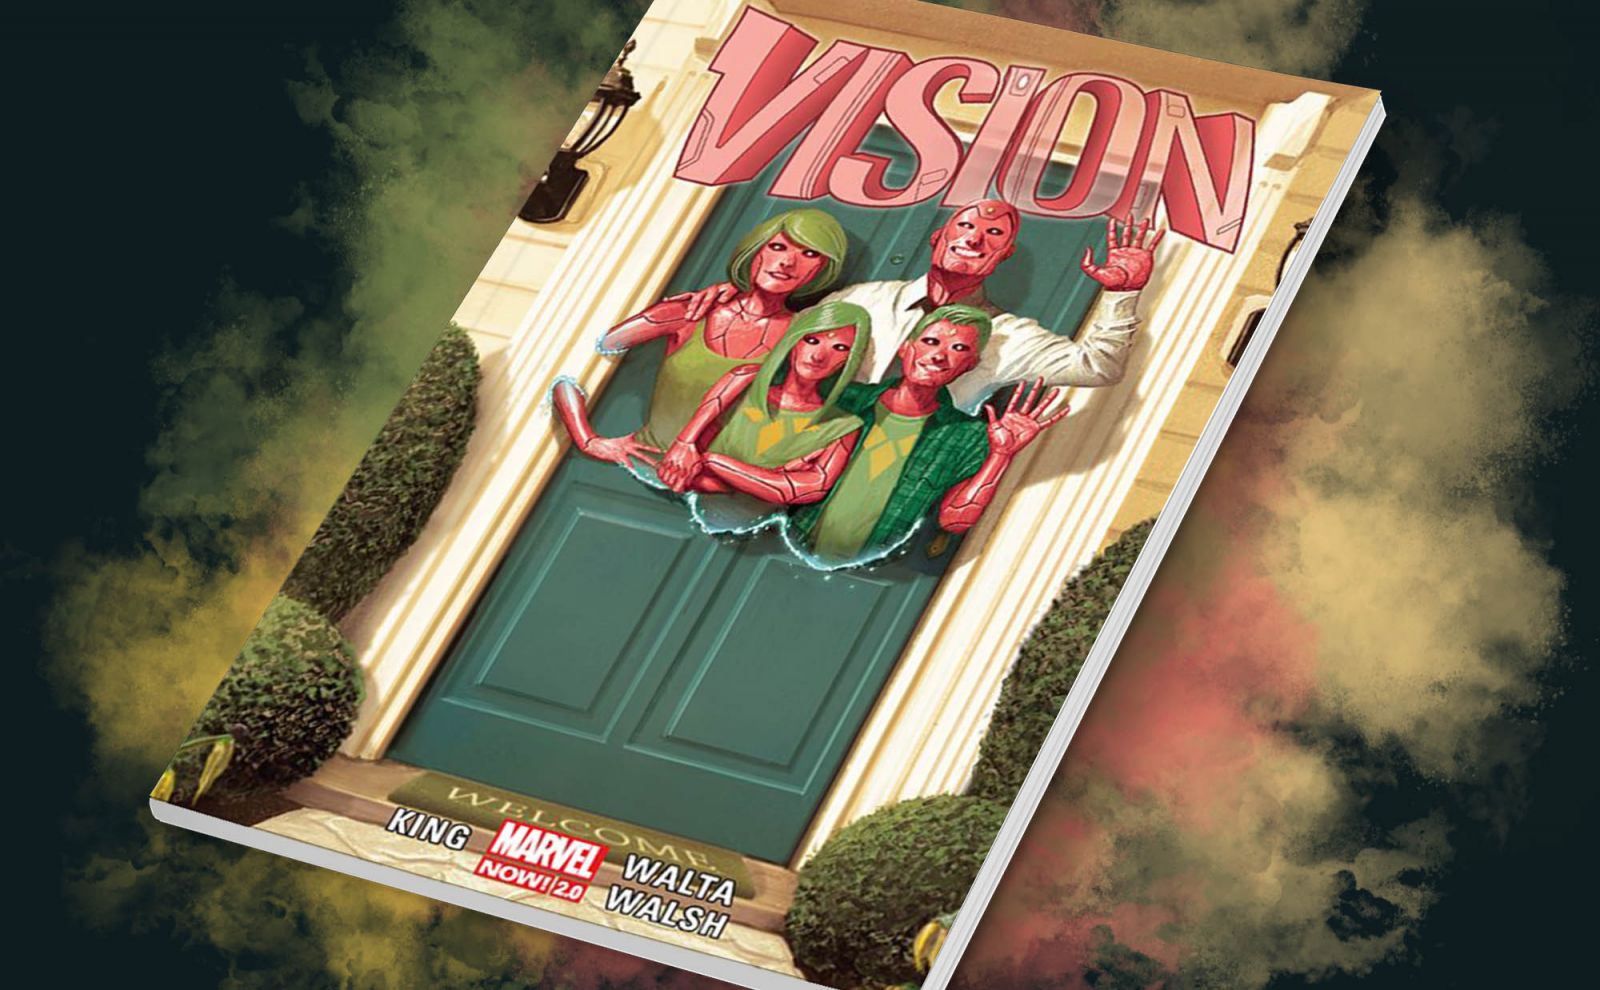 Komiks "Vision"